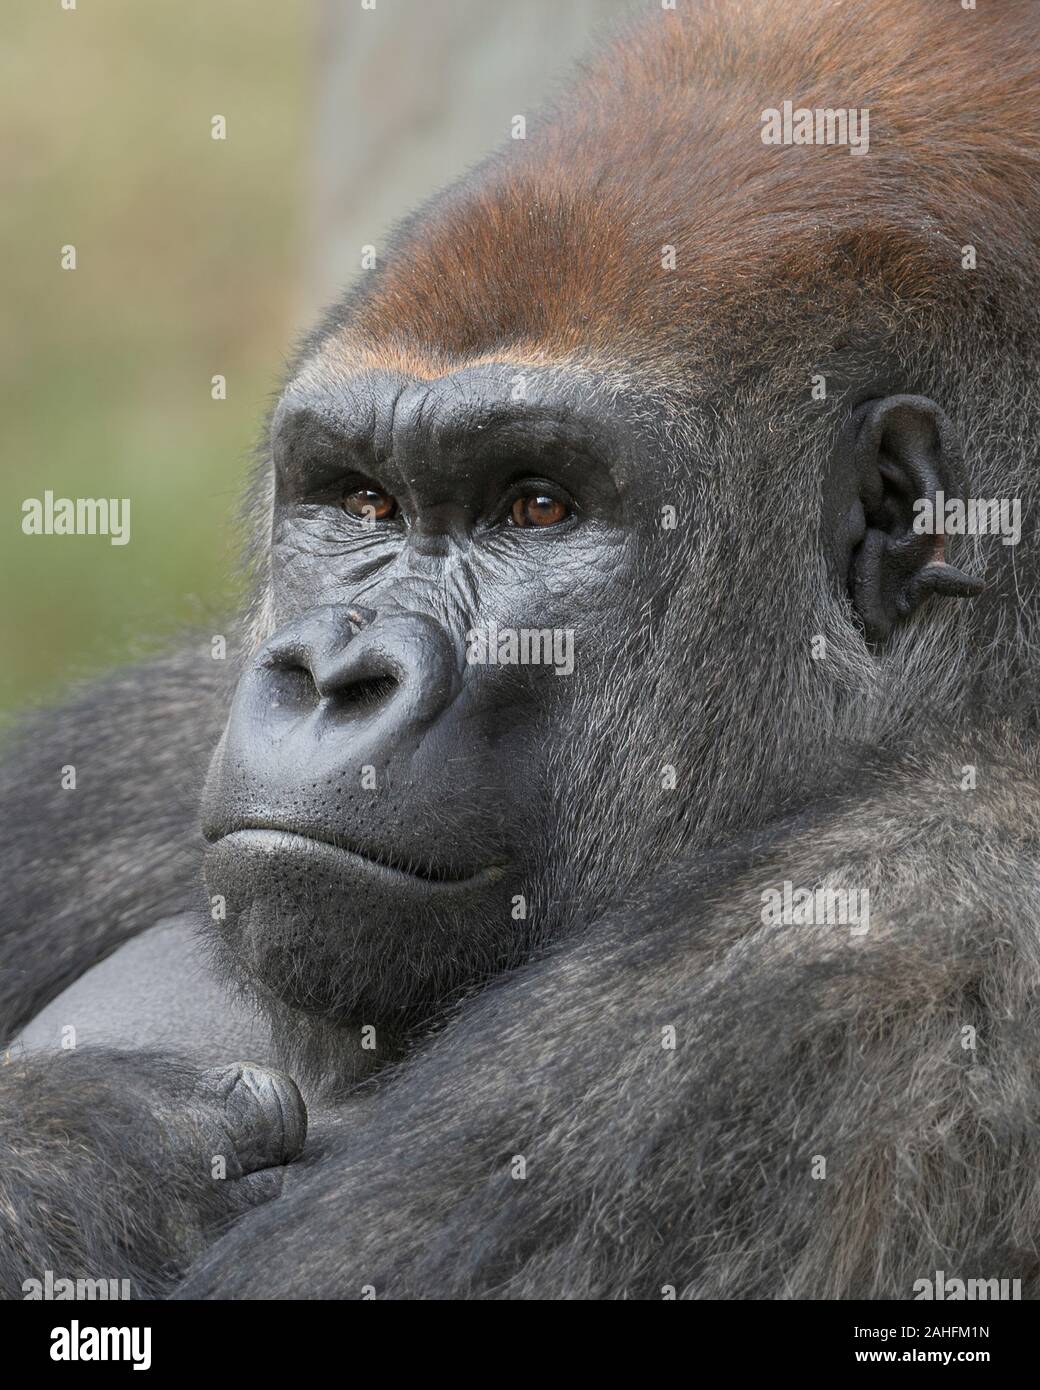 Closeup ritratto di una pianura occidentale maschio gorilla silverback Foto Stock